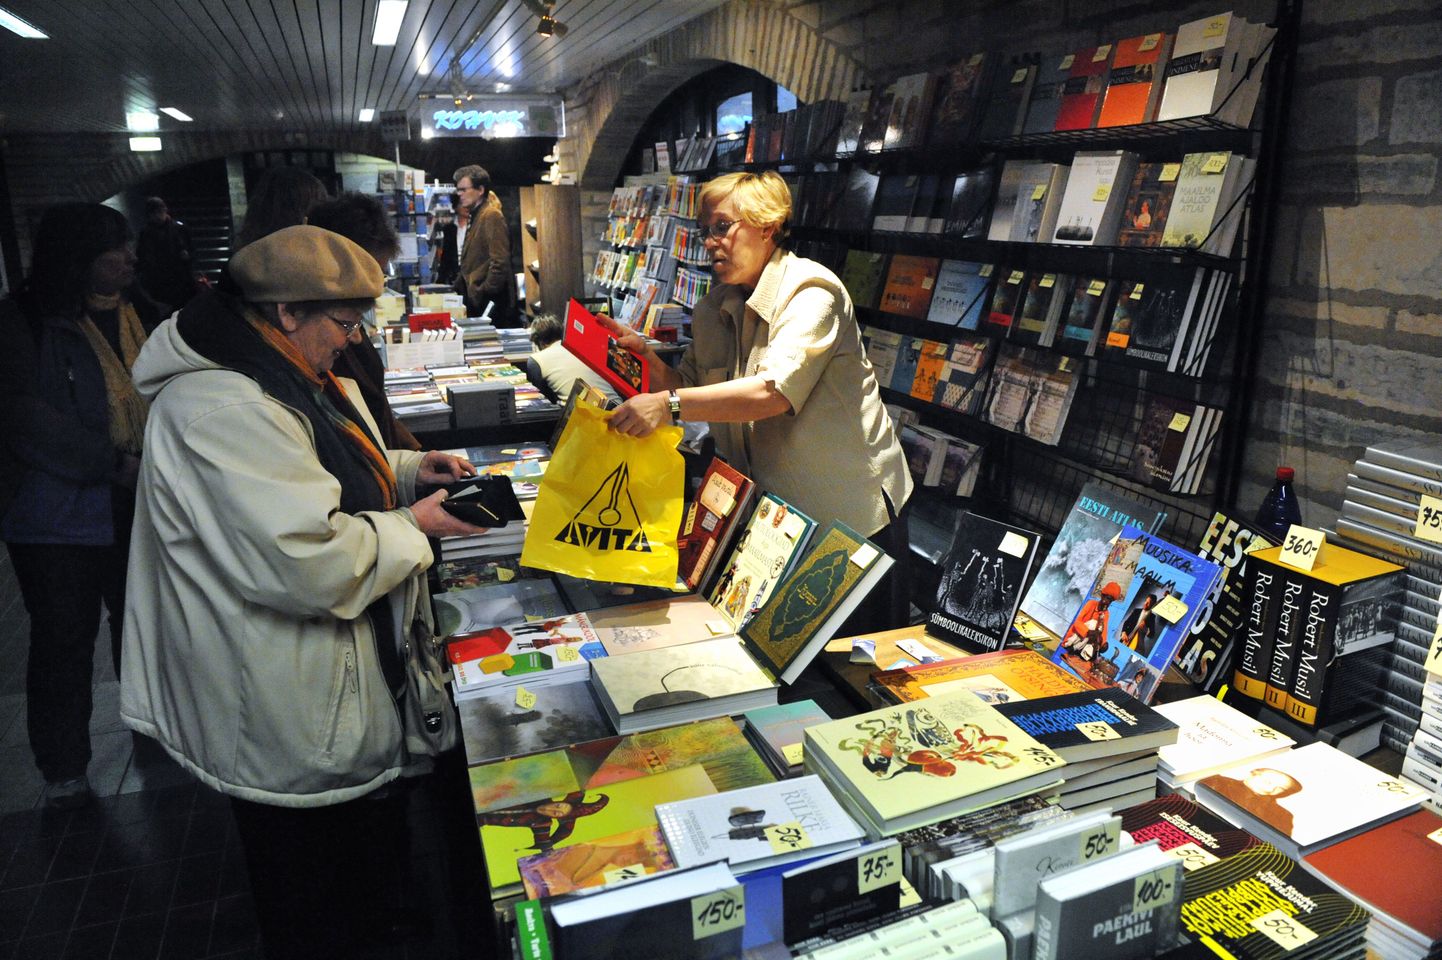 Eesti Rahvusraamatukogus toimub traditsiooniline jõulukuu raamatunädal, kus enam kui 60 kirjastust pakuvad raamatuid.